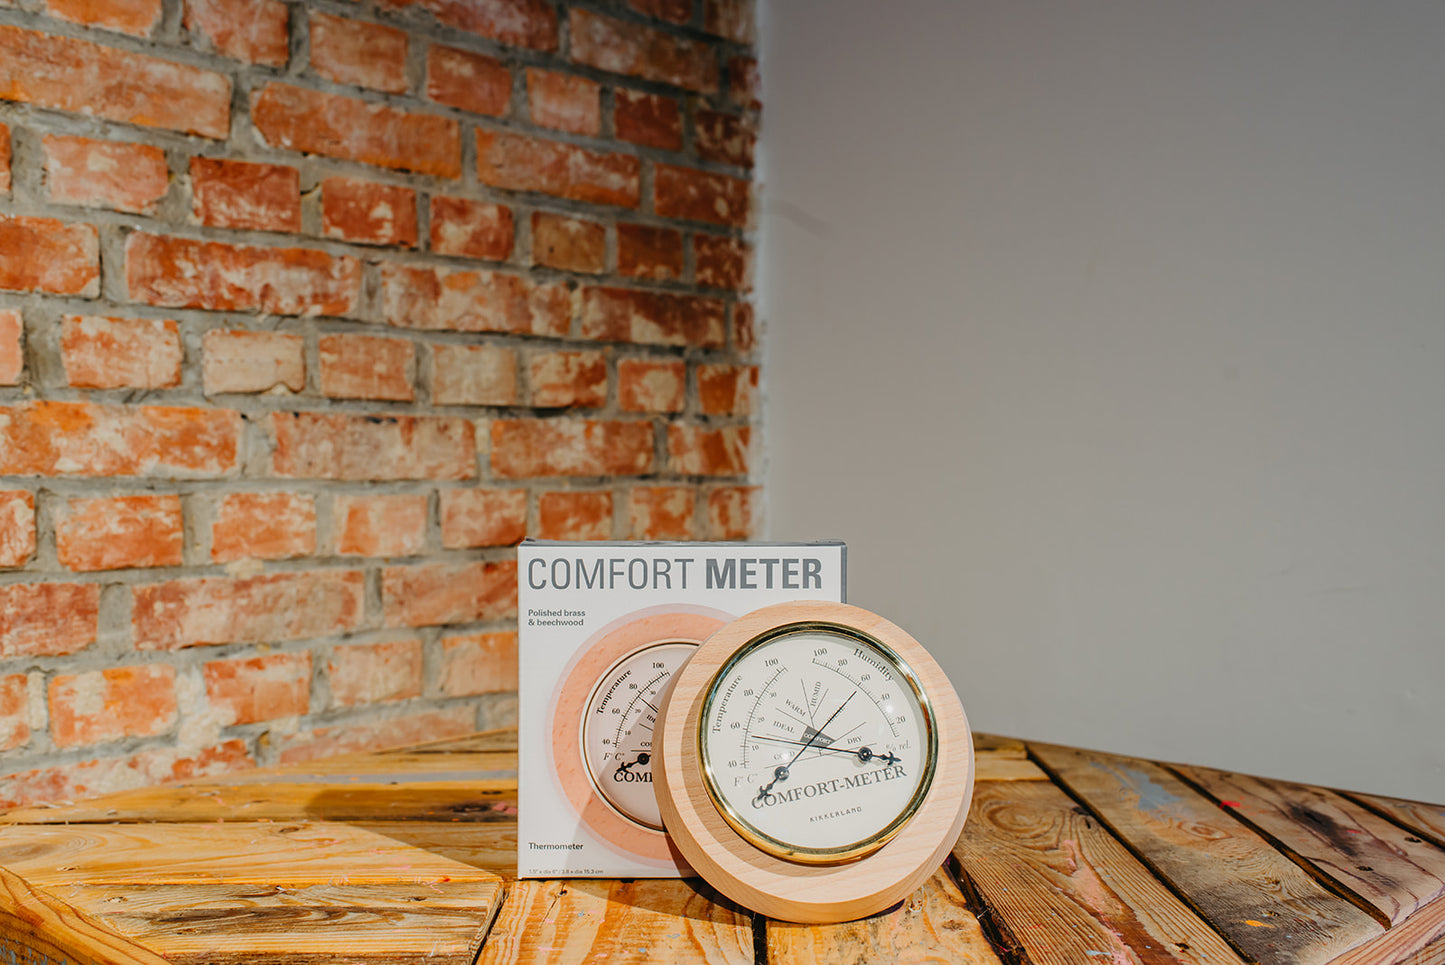 Comfort meter